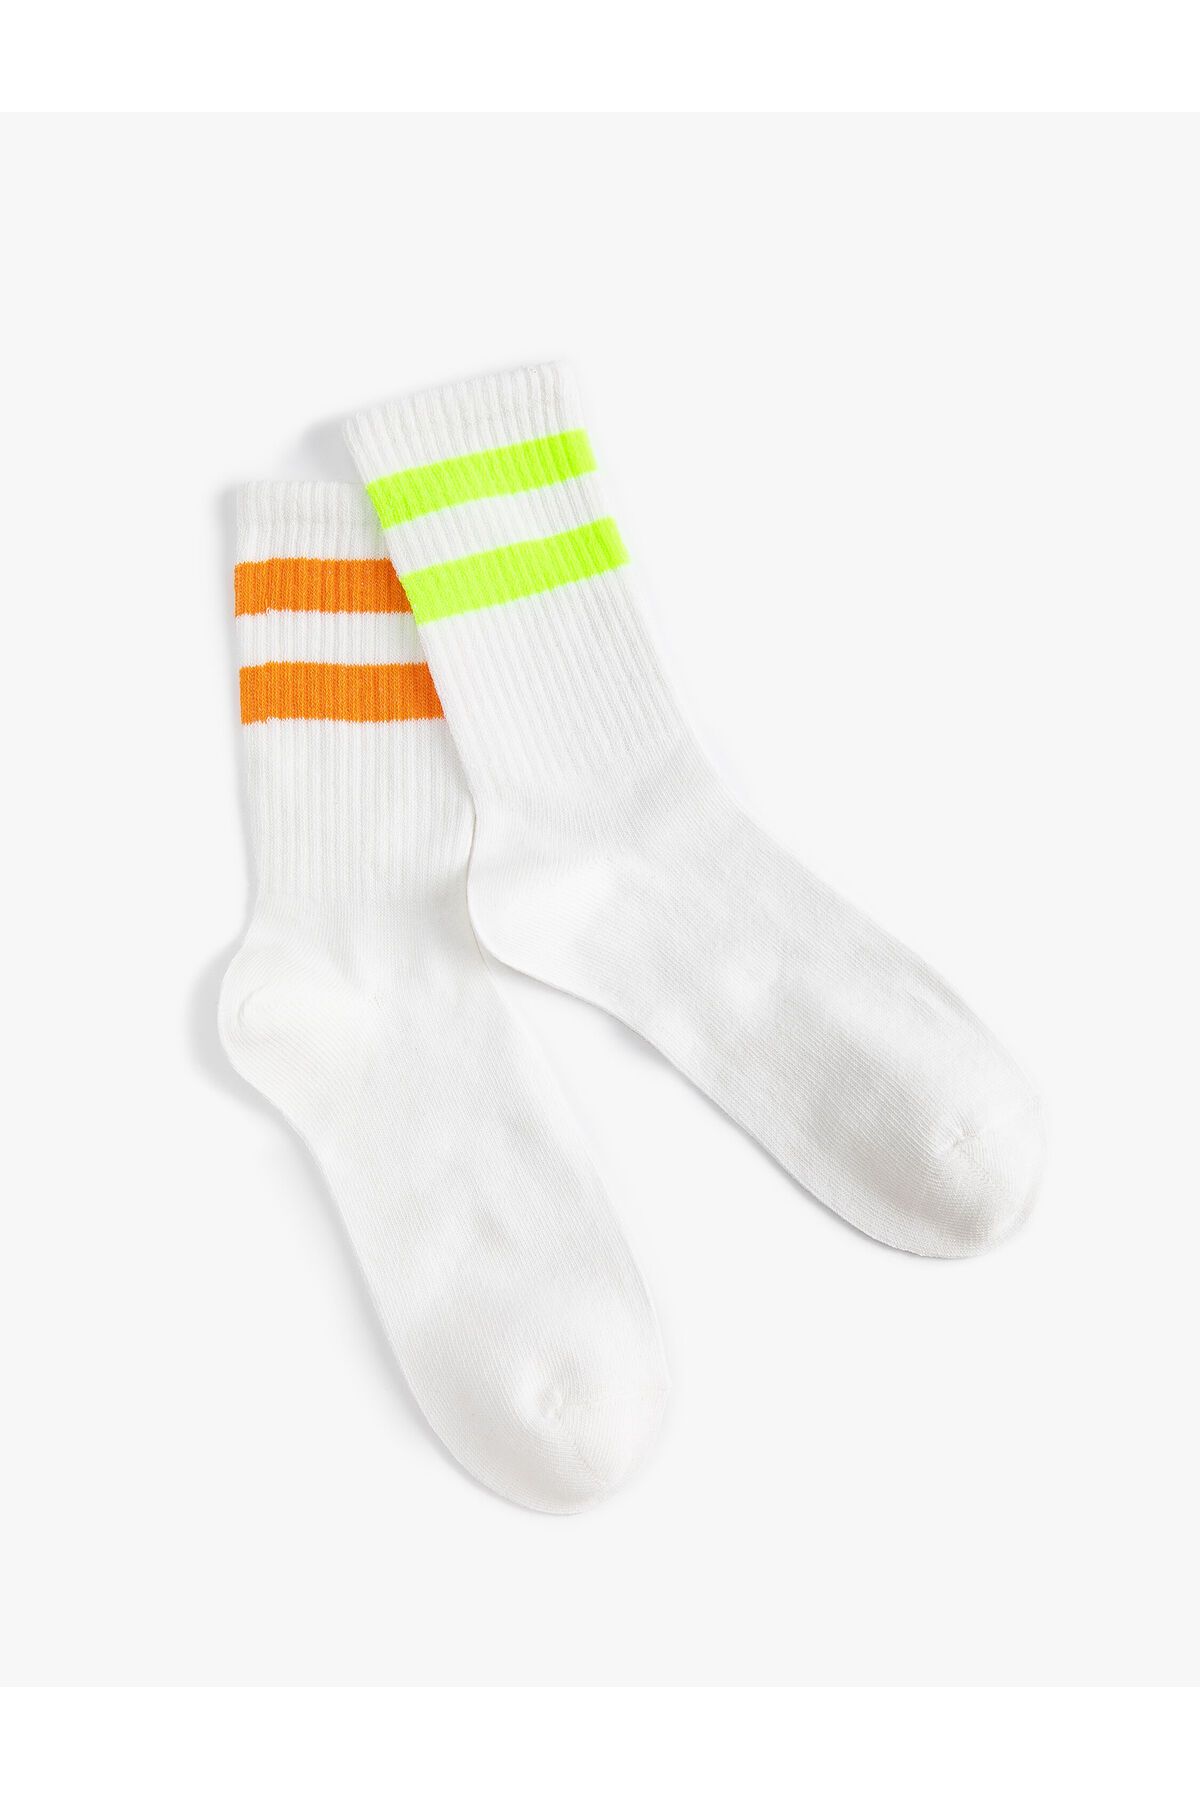 Koton 2'li Tenis Çorap Seti Şerit Desenli